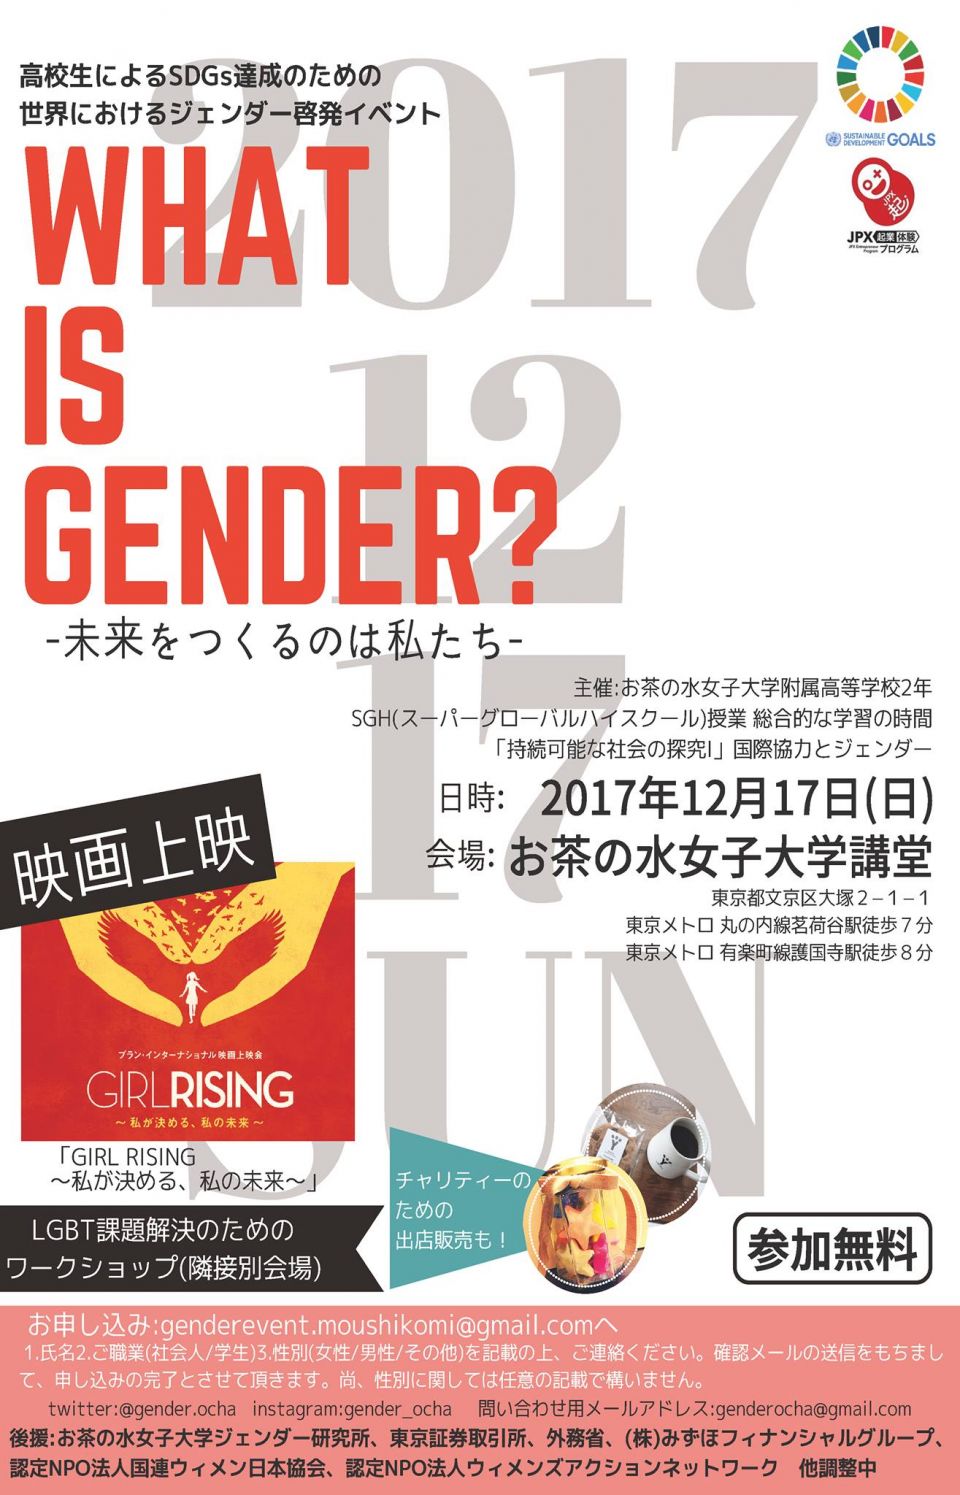 全國首例 日本御茶水女子大學 2020年起接收跨性別學生